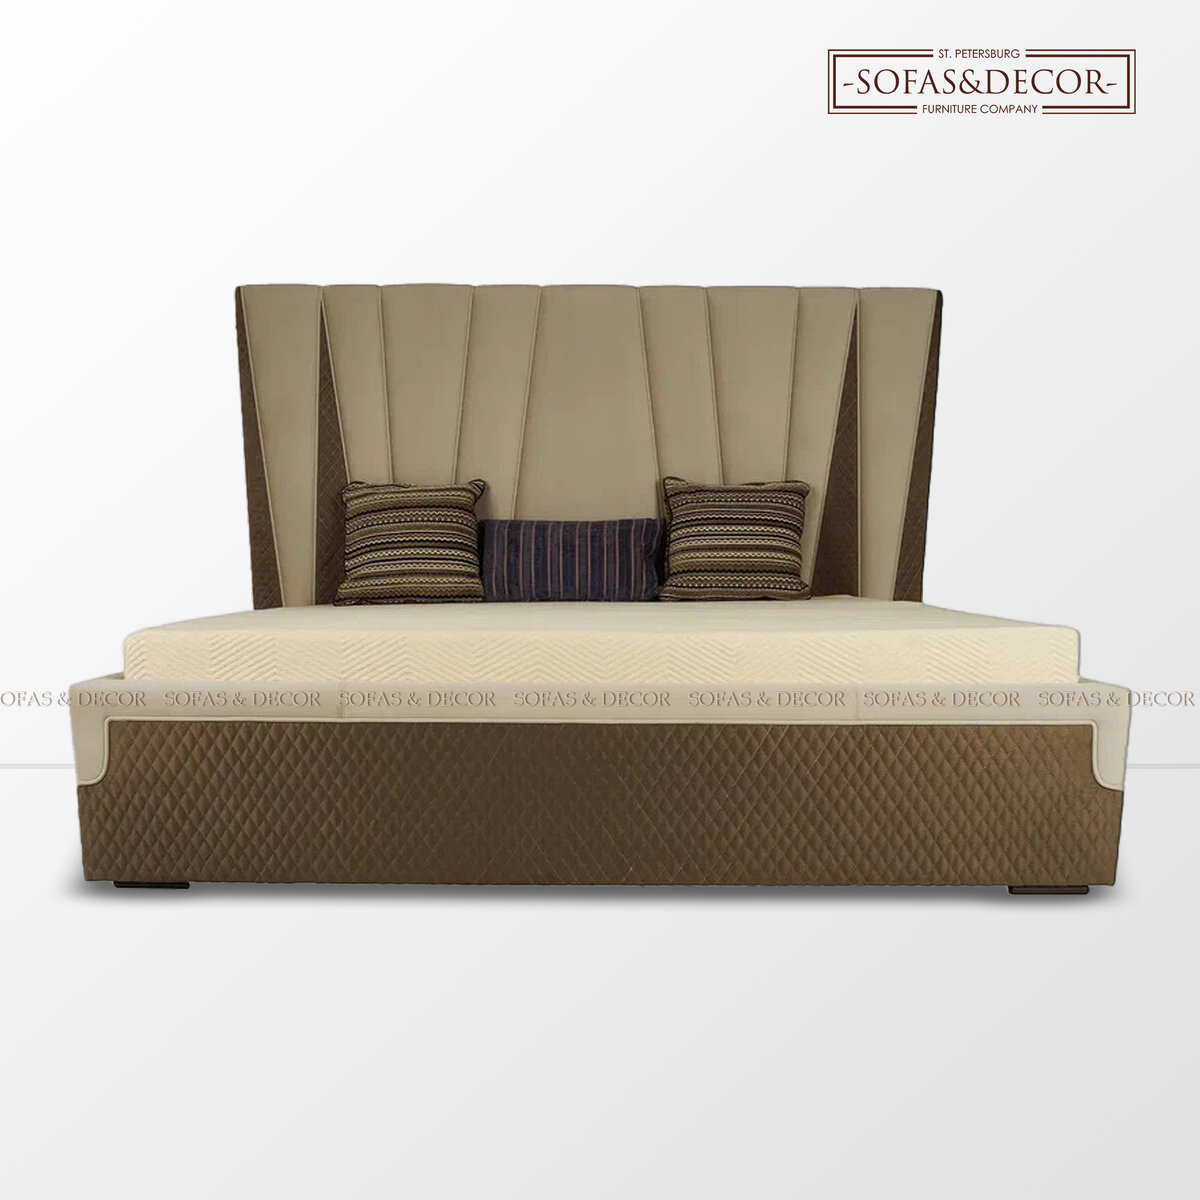 Кровать Sofas&Decor в обивке из велюра и искусственной замши.